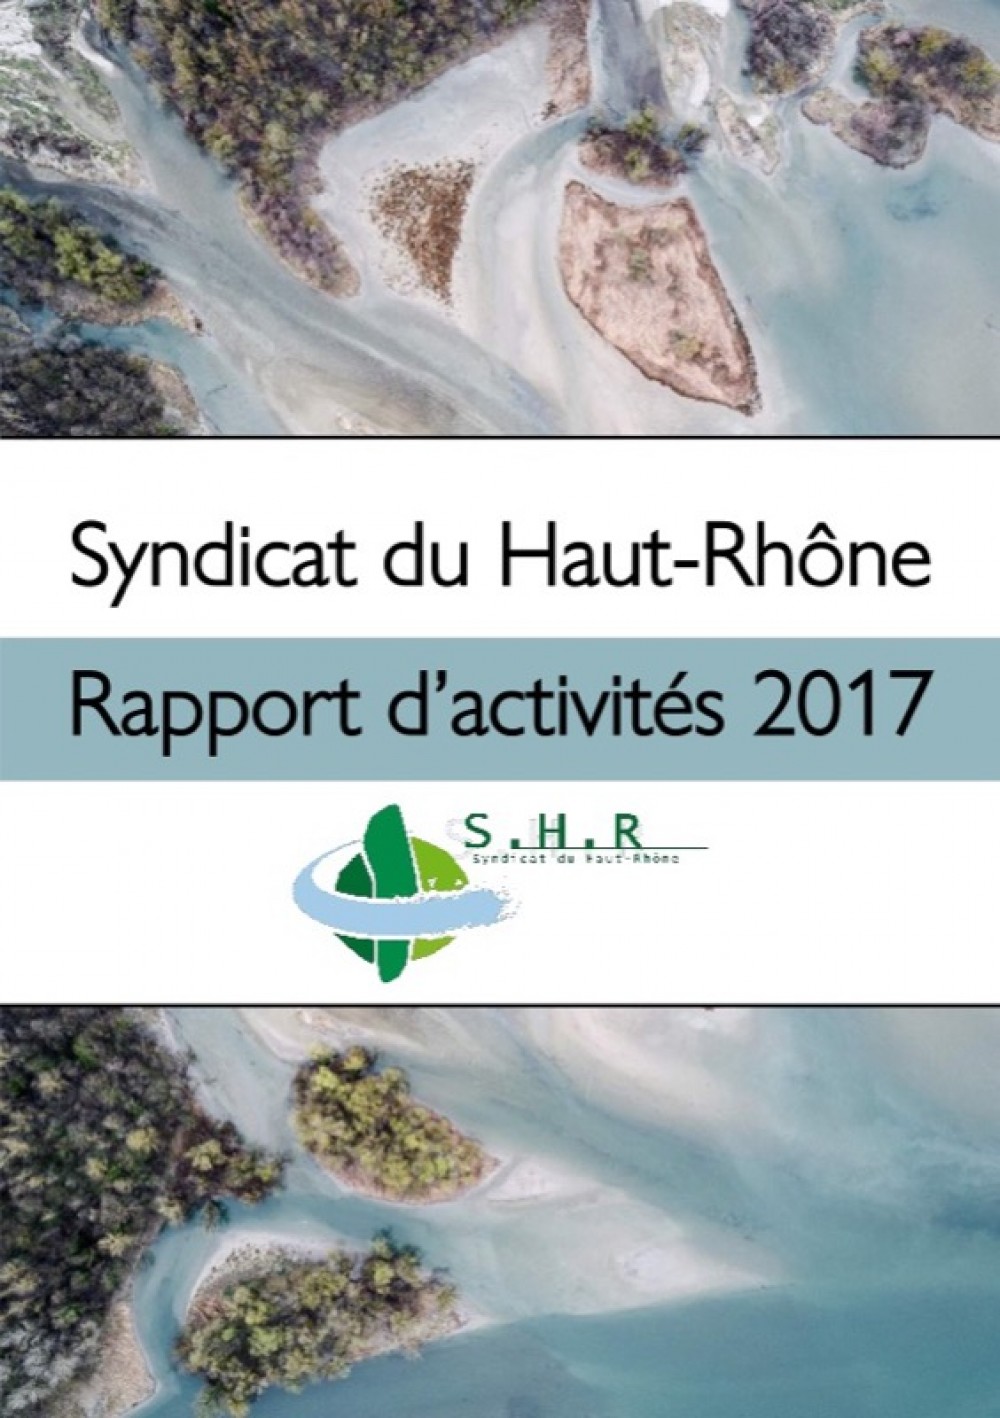 [Publication] Rapport d'activités du Syndicat du Haut-Rhône 2017